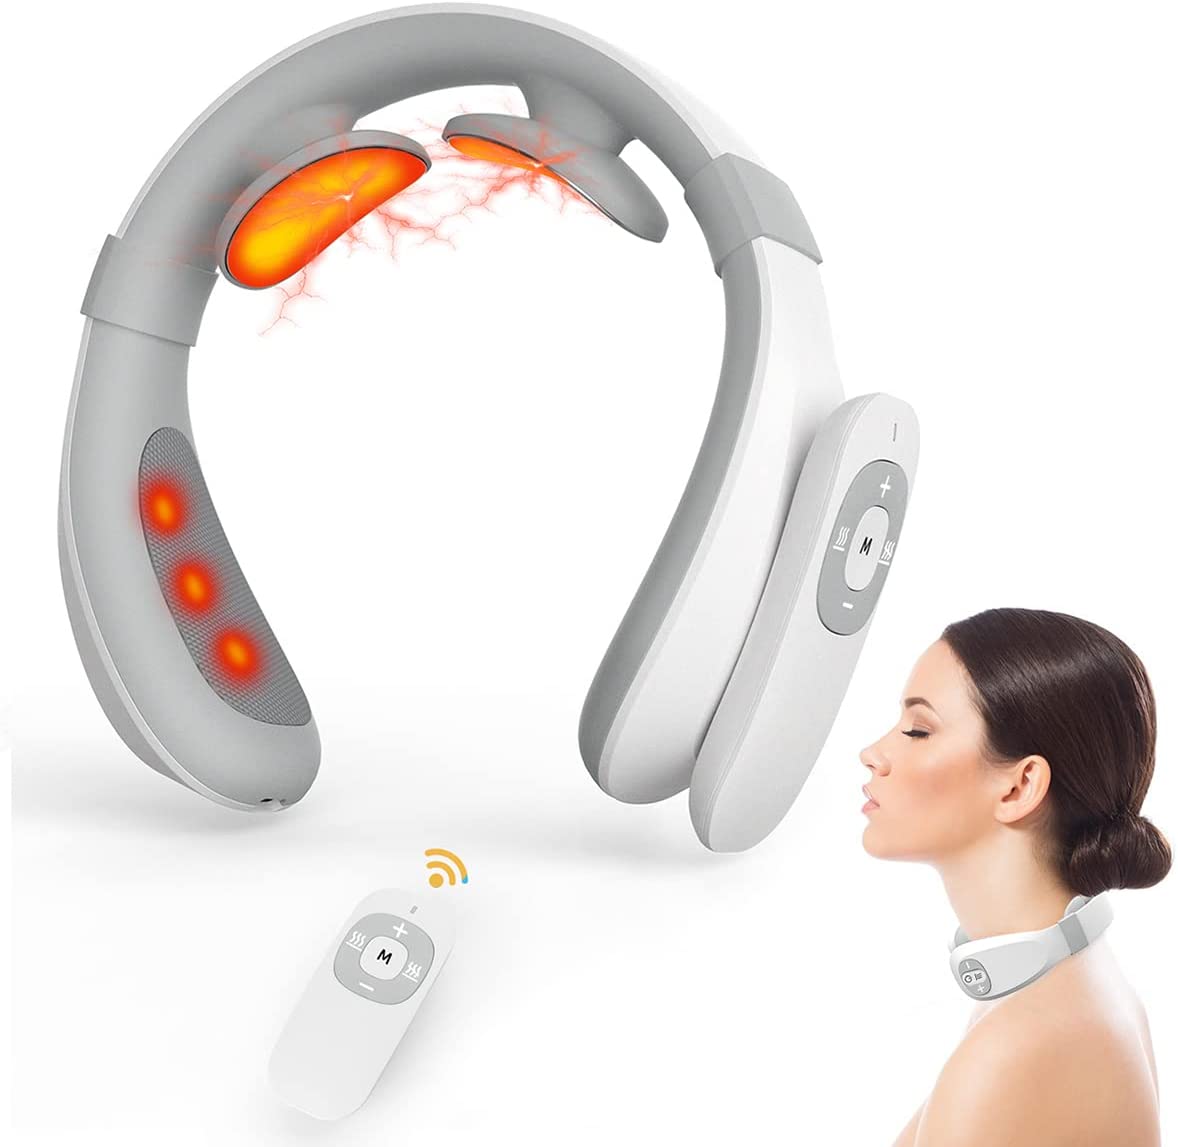 Bild zu Grifucher Shiatsu Massagegerät mit 3D Massage für 19,99€